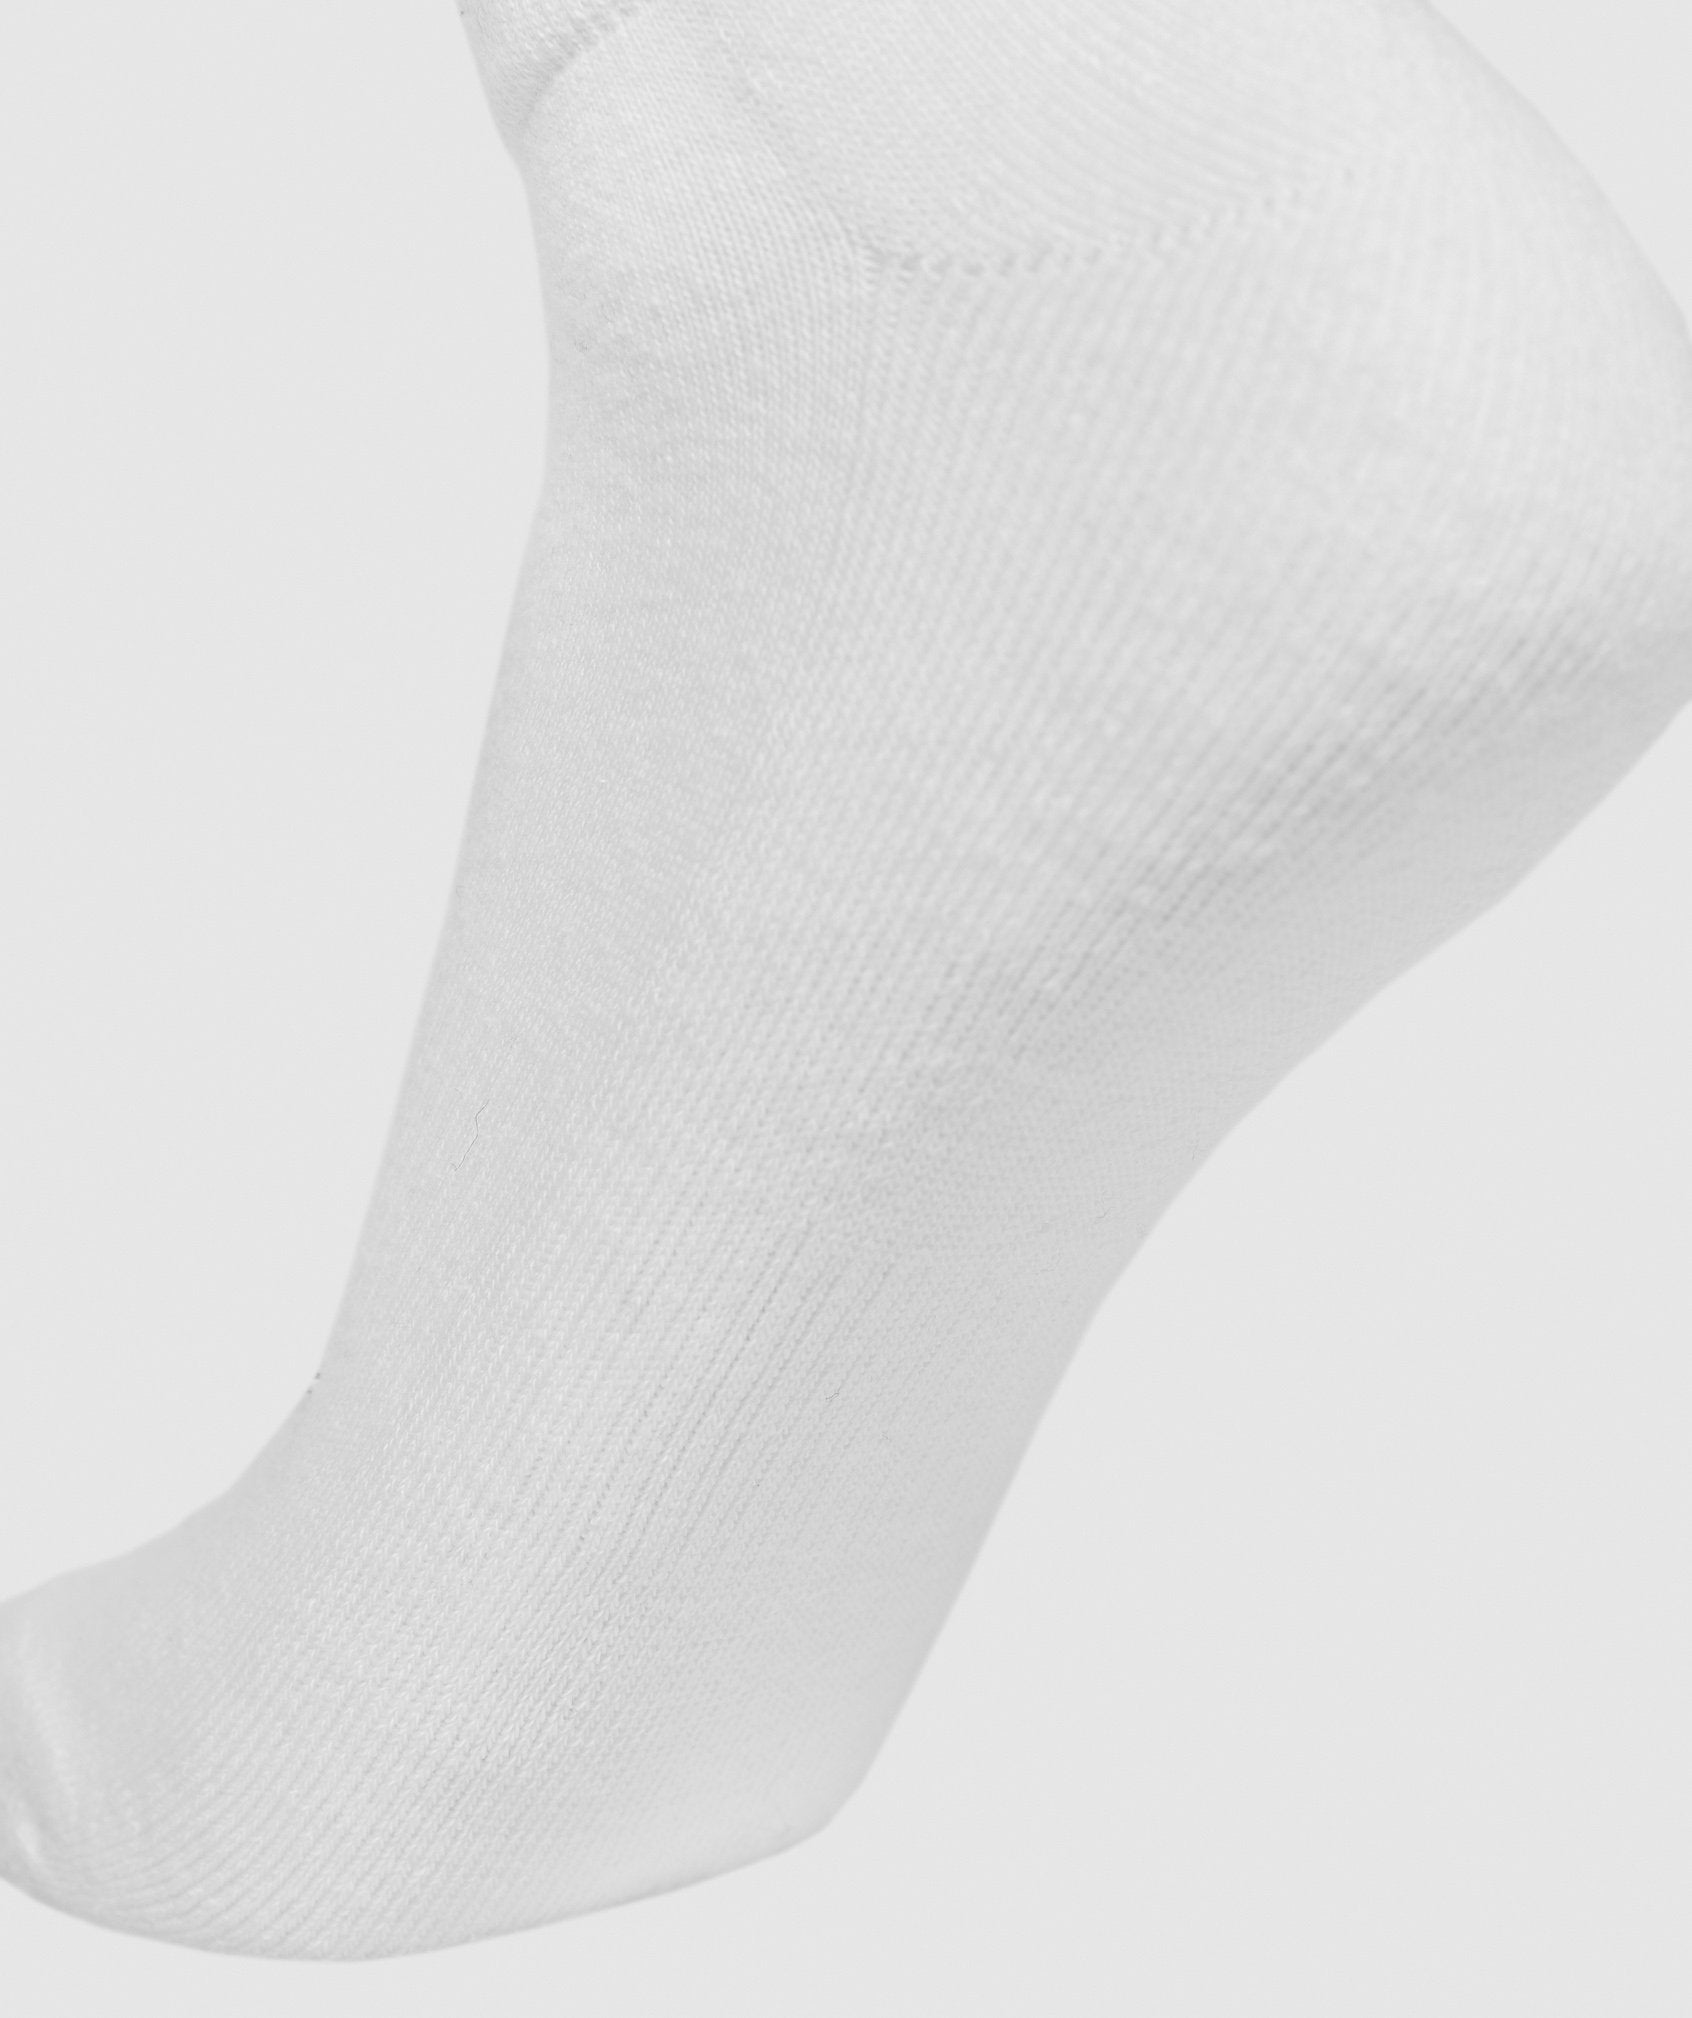 Mens Trainer Socks (3pk) in White - view 4